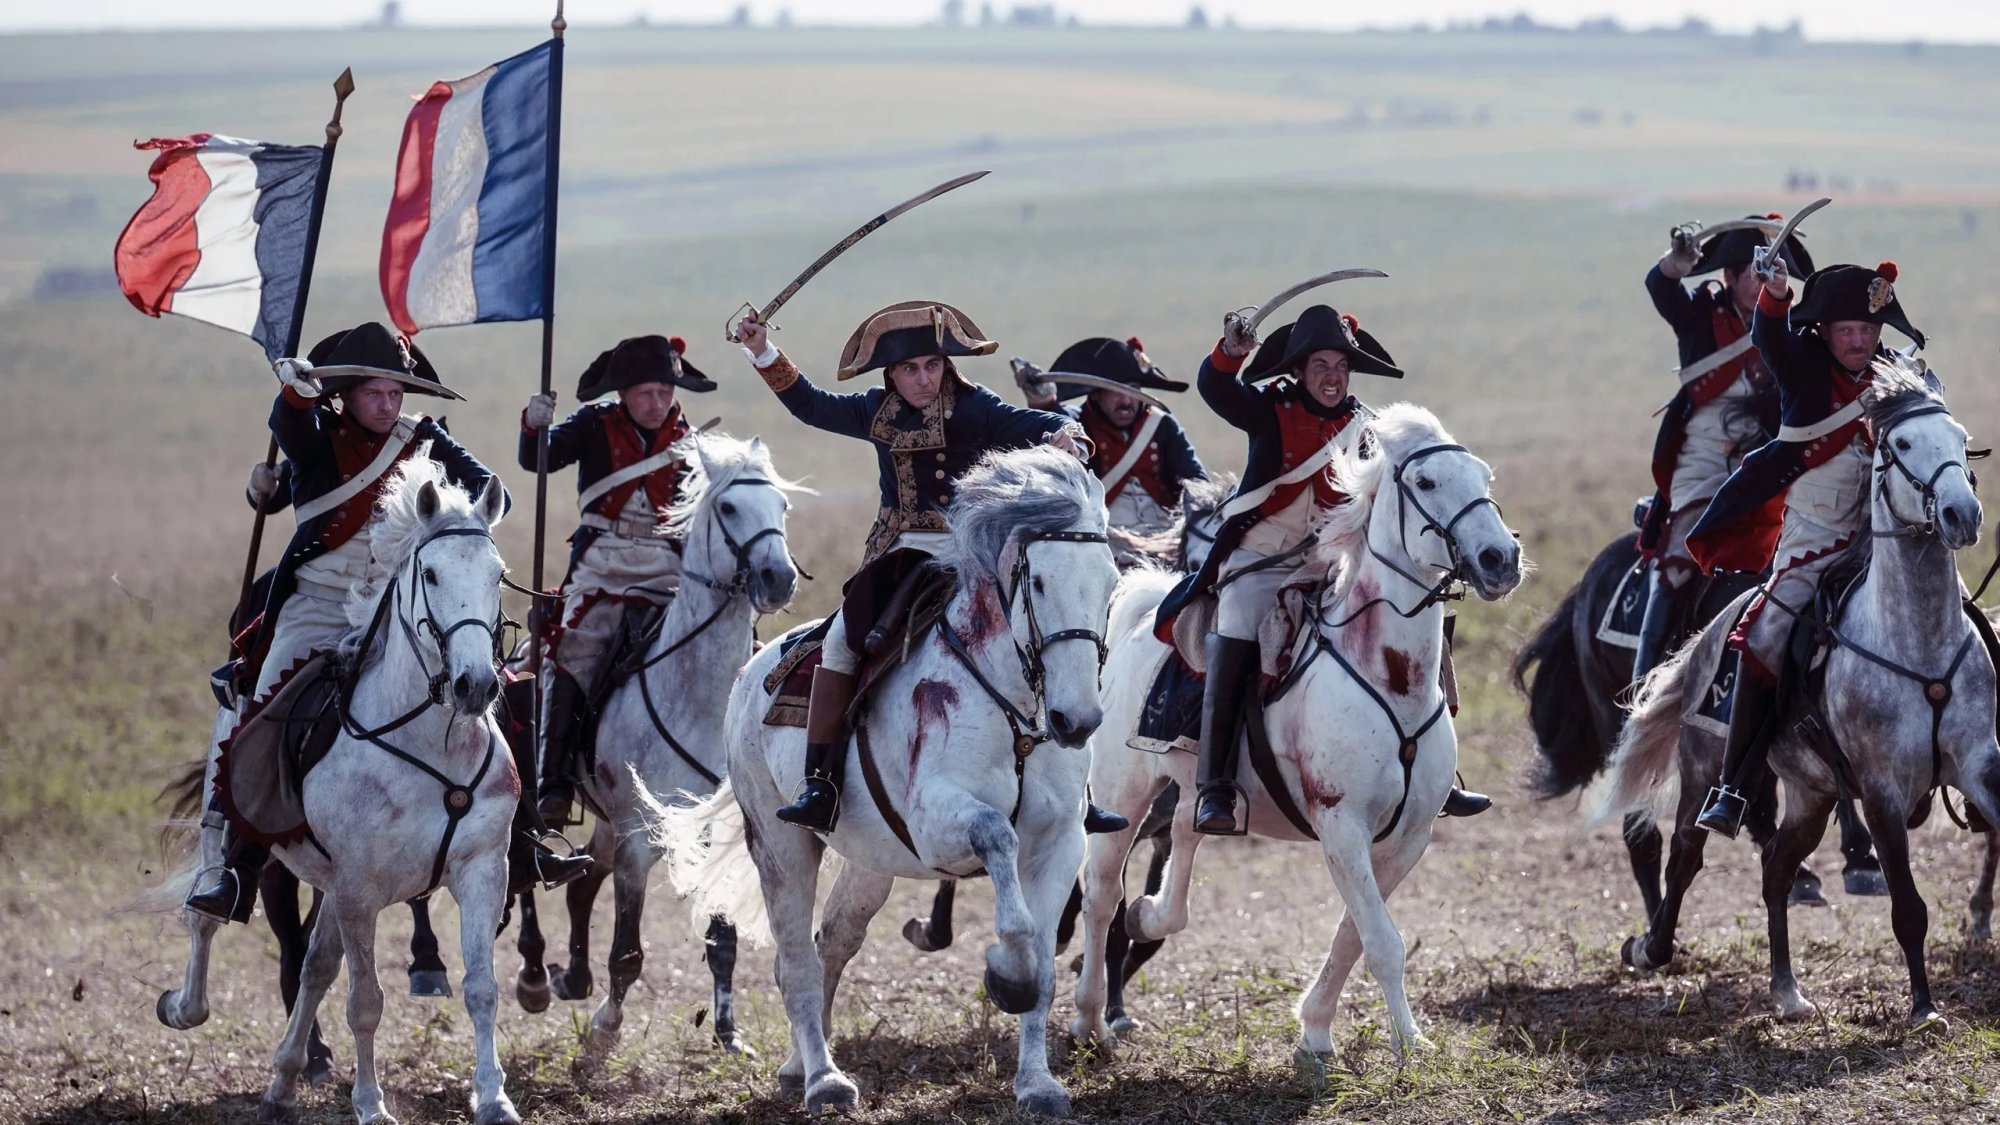 Napoleon: Κυκλοφόρησε το τελικό τρέιλερ της επικής παραγωγής του Ridley Scott